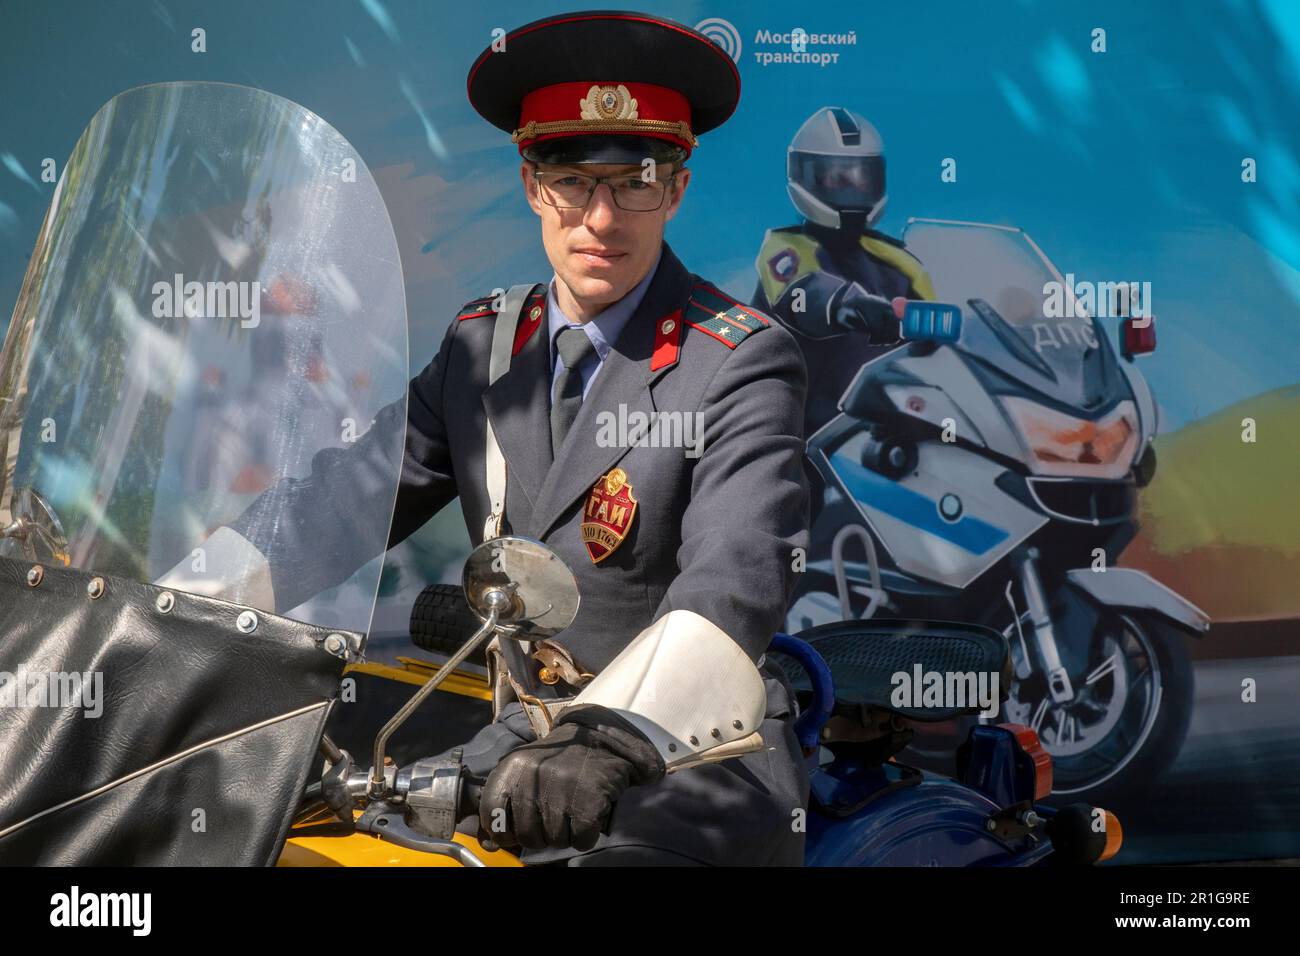 Moskau, Russland. 13. Mai 2023. Ein Mann in sowjetischer Uniform eines Verkehrspolizisten sitzt hinter dem Steuer eines Ural-Motorrads beim Moskauer Motorradfestival, das die Eröffnung einer neuen Motorradsaison im Muzeon-Park in Moskau, Russland, feiert Stockfoto